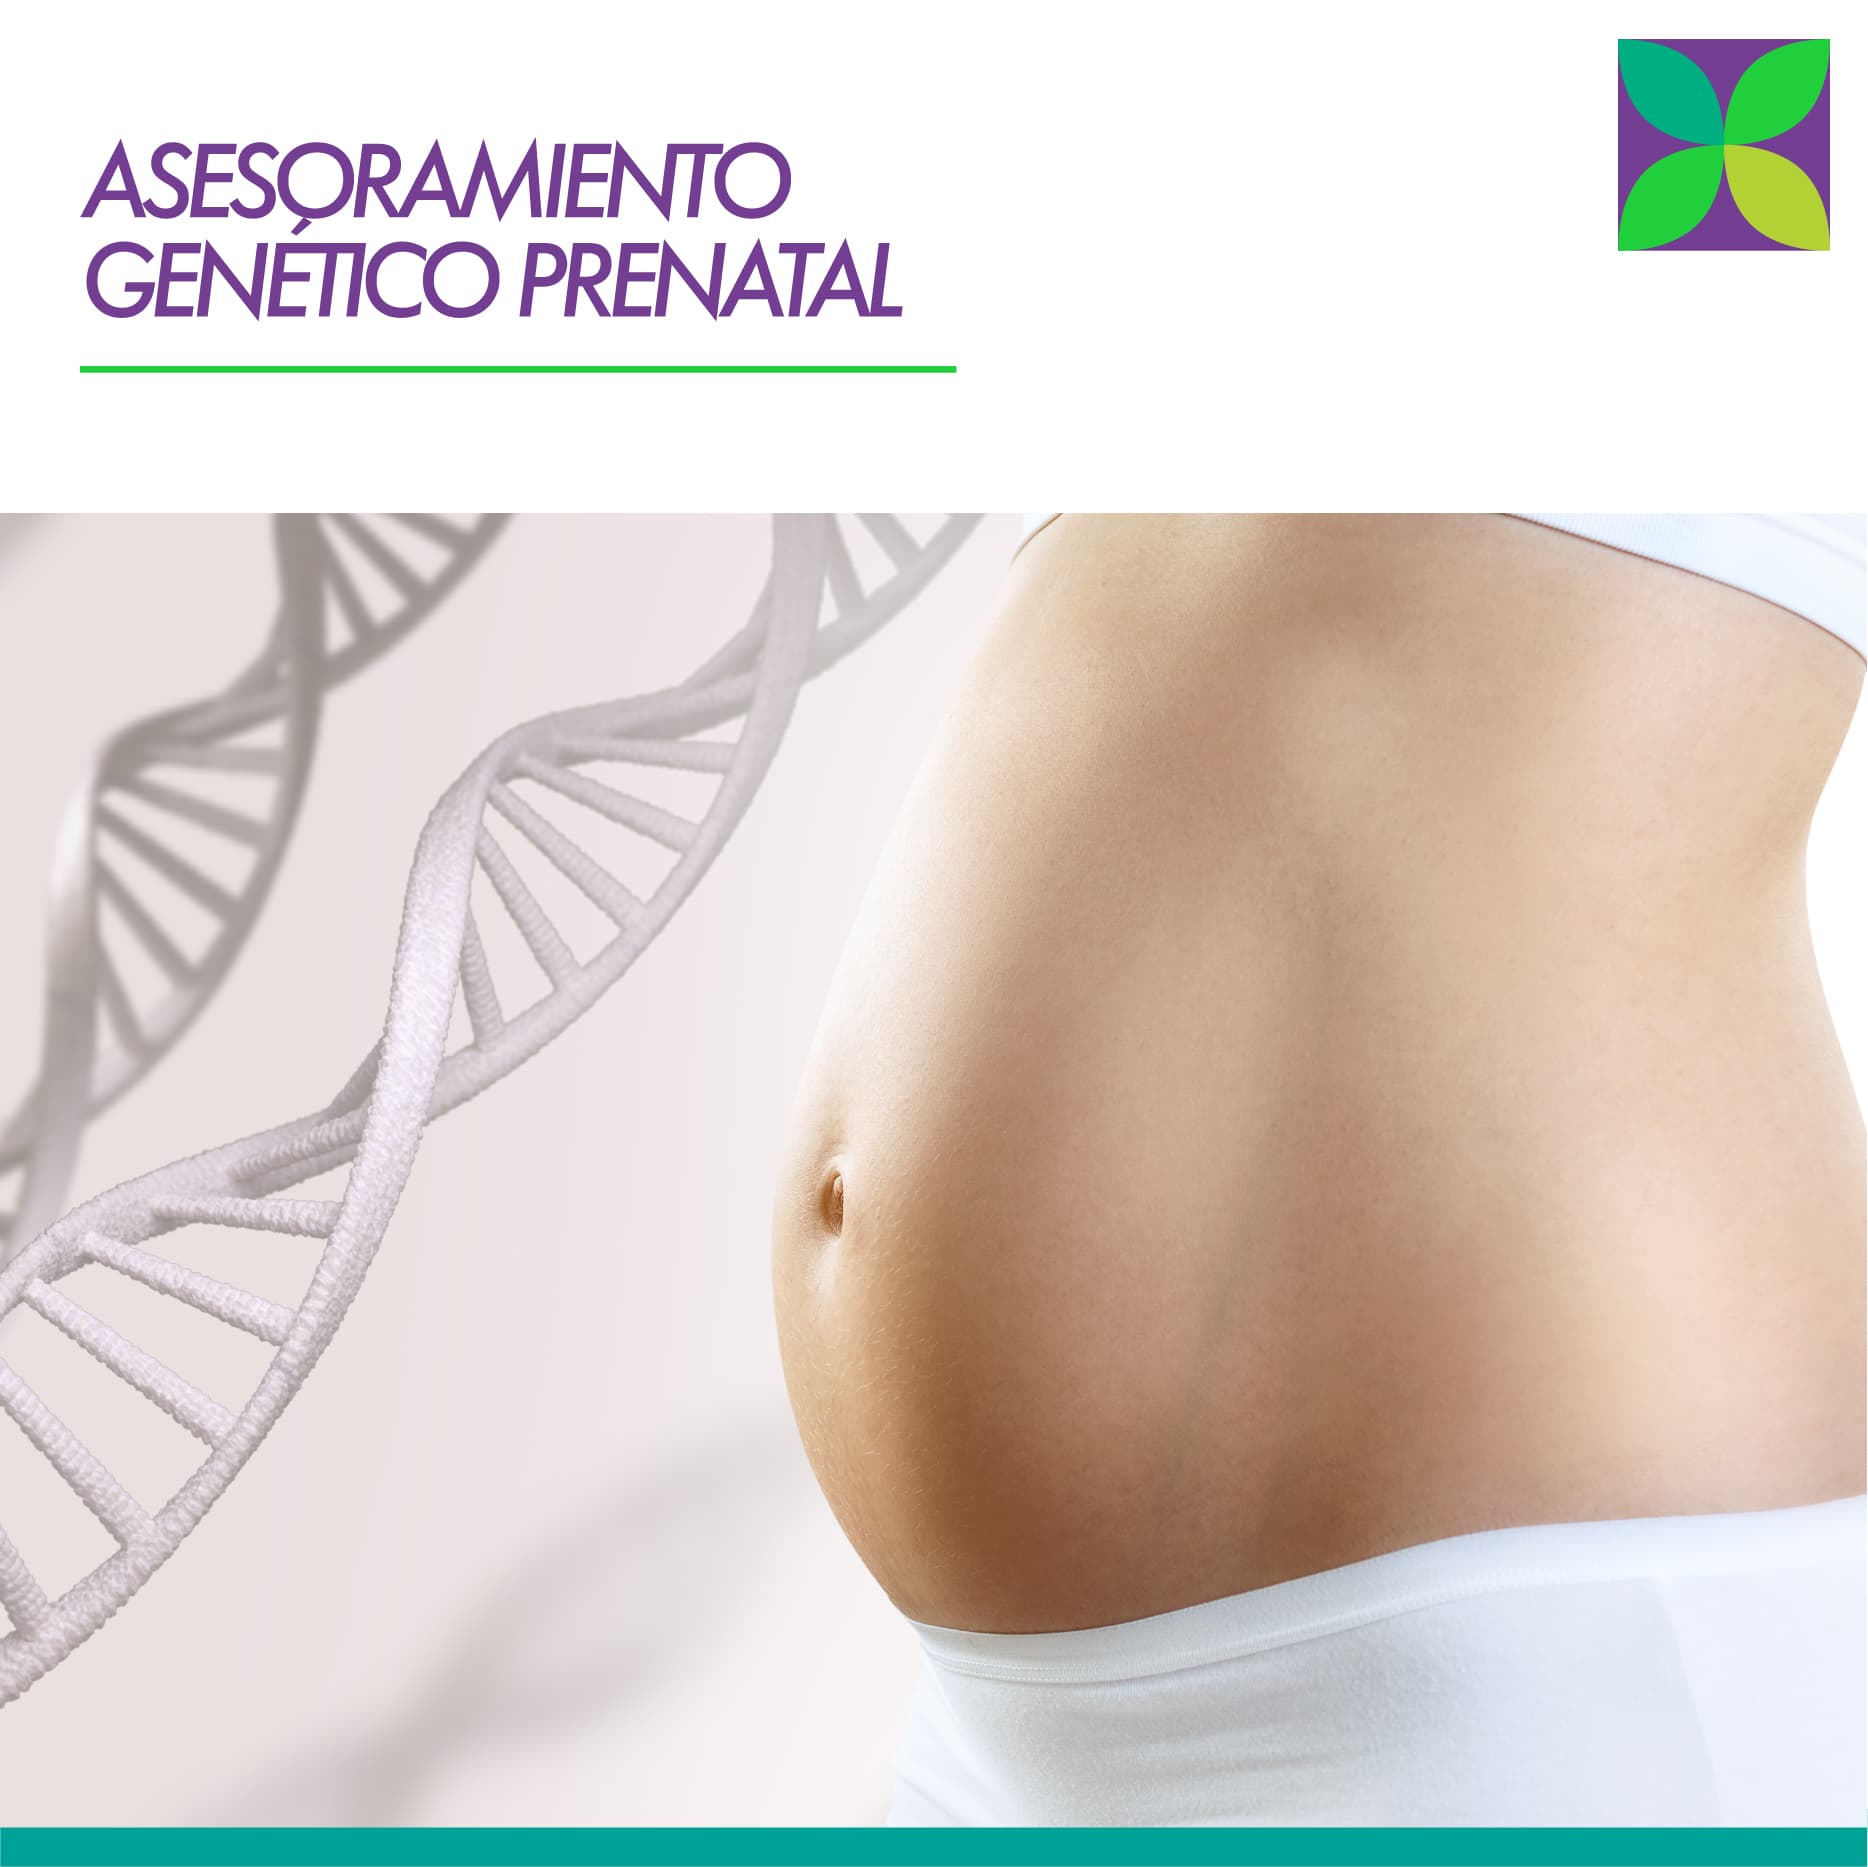 Programa Asesoramiento Genético Prenatal